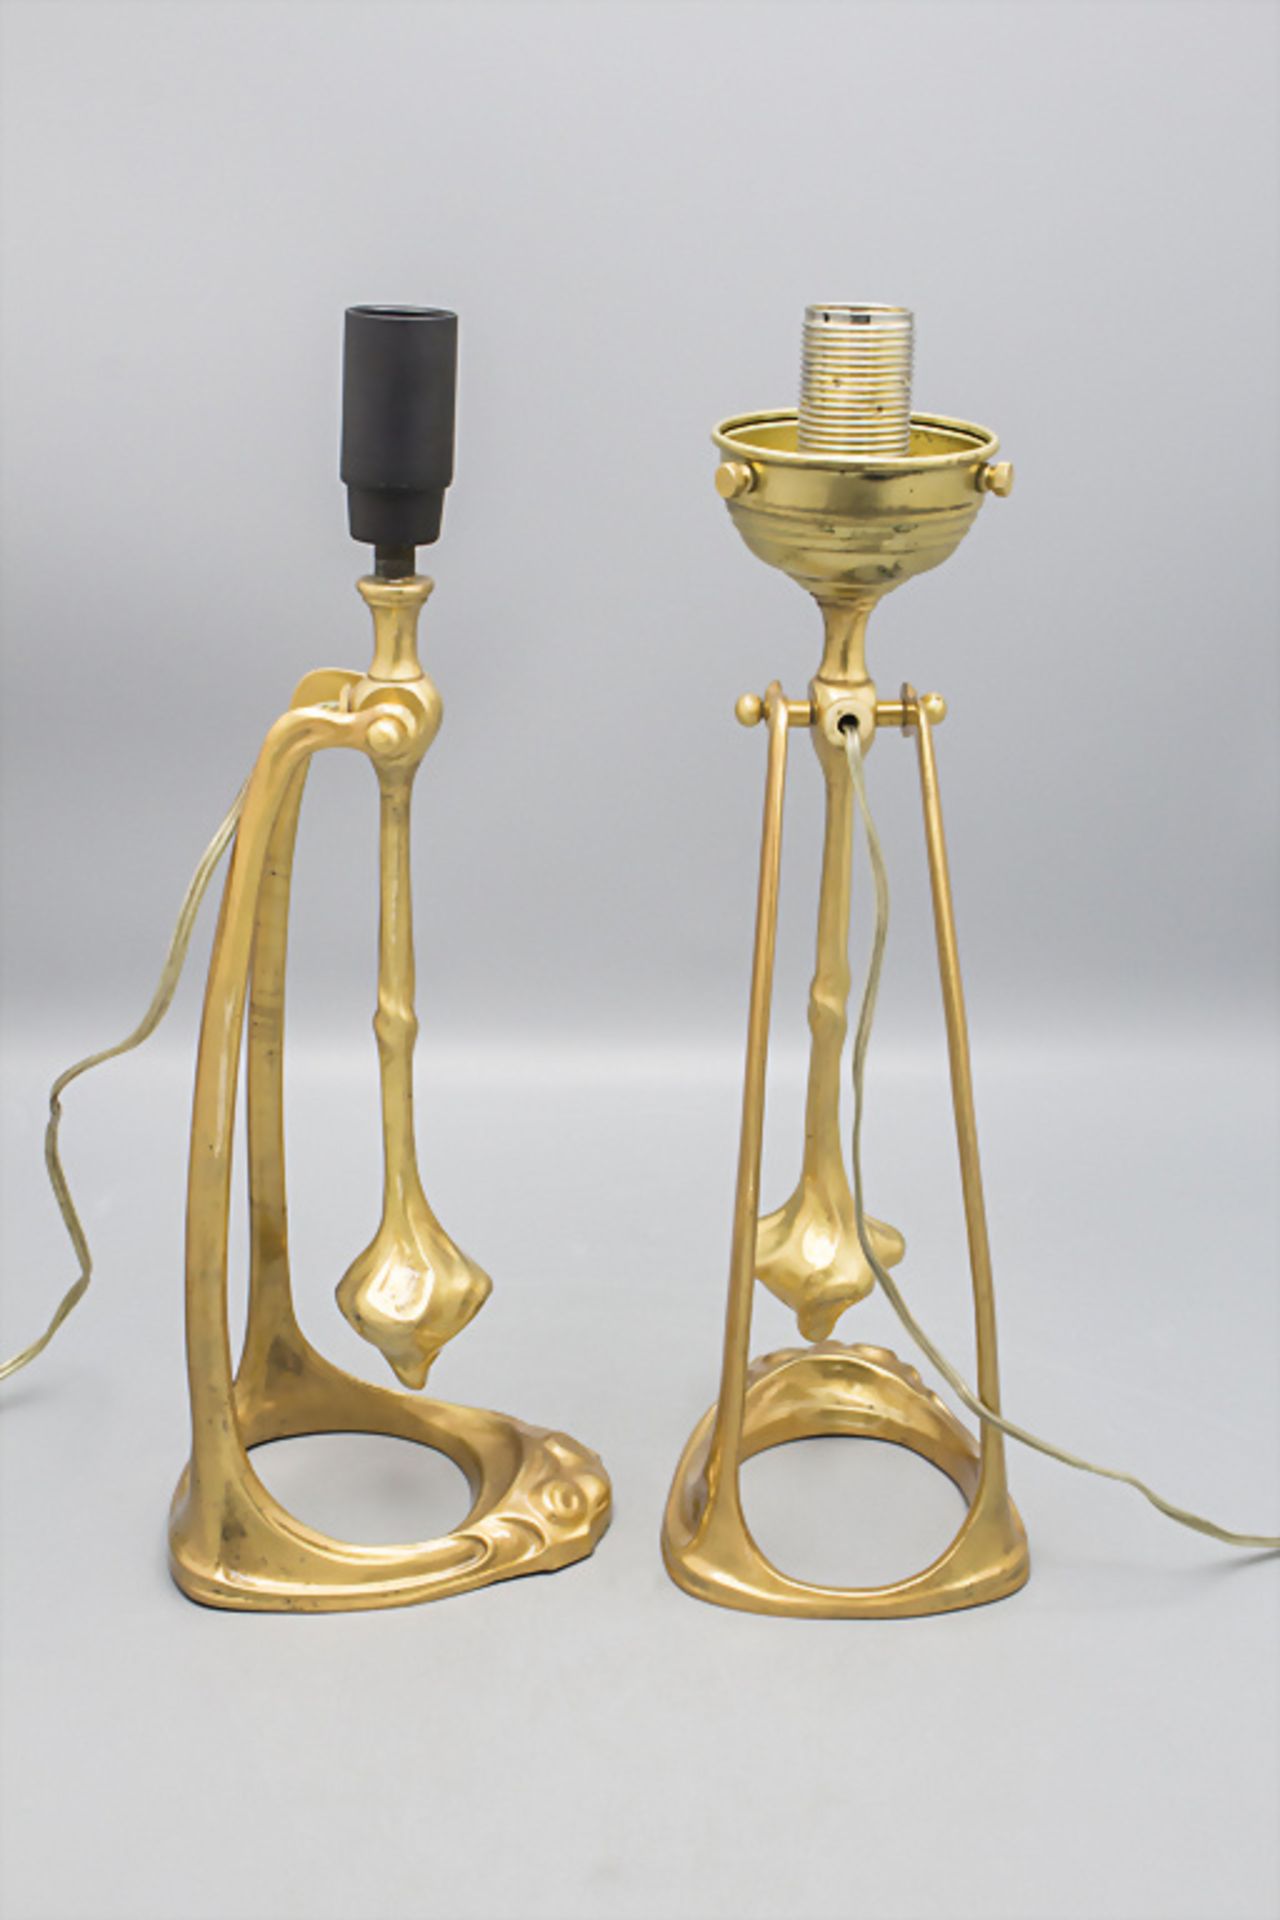 Paar Jugendstil Lampenfüße / A pair of Art Nouveau lamp bases - Image 2 of 2